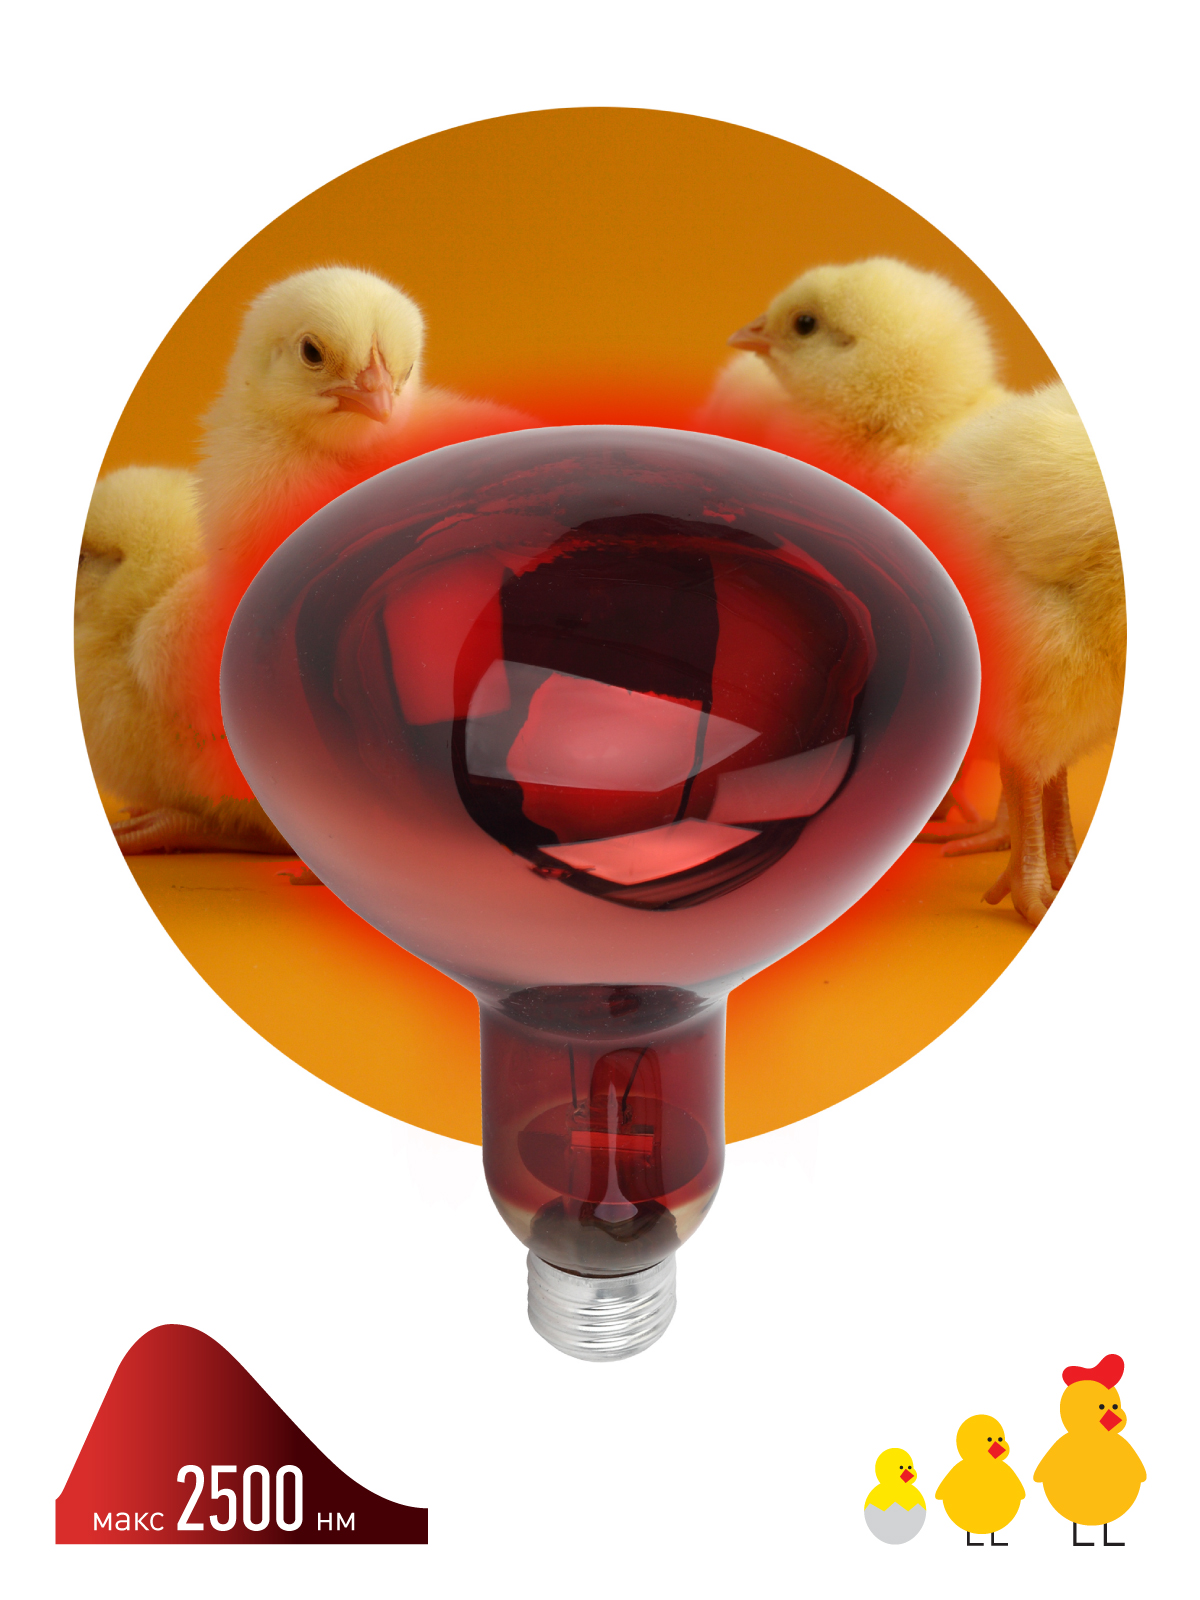 Лампа ИКЗК 220-250 R127 ЭРА для обогрева животных и освещения, 250 Вт,